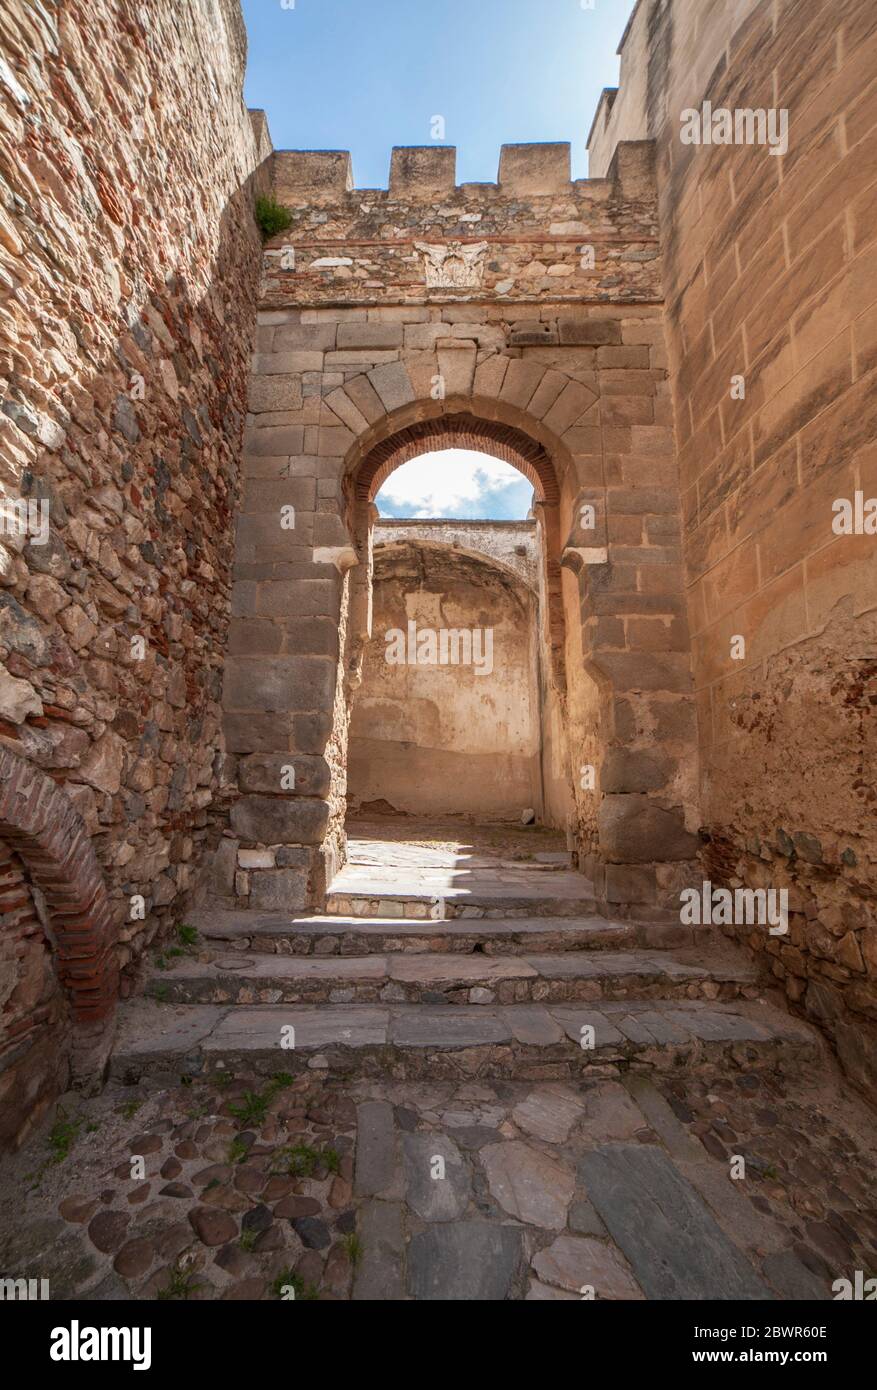 Puerta de la capital en Badajoz Alcazaba, ciudadela amurallada de la era de Almohade, siglo XII. Extremadura, España. Foto de stock